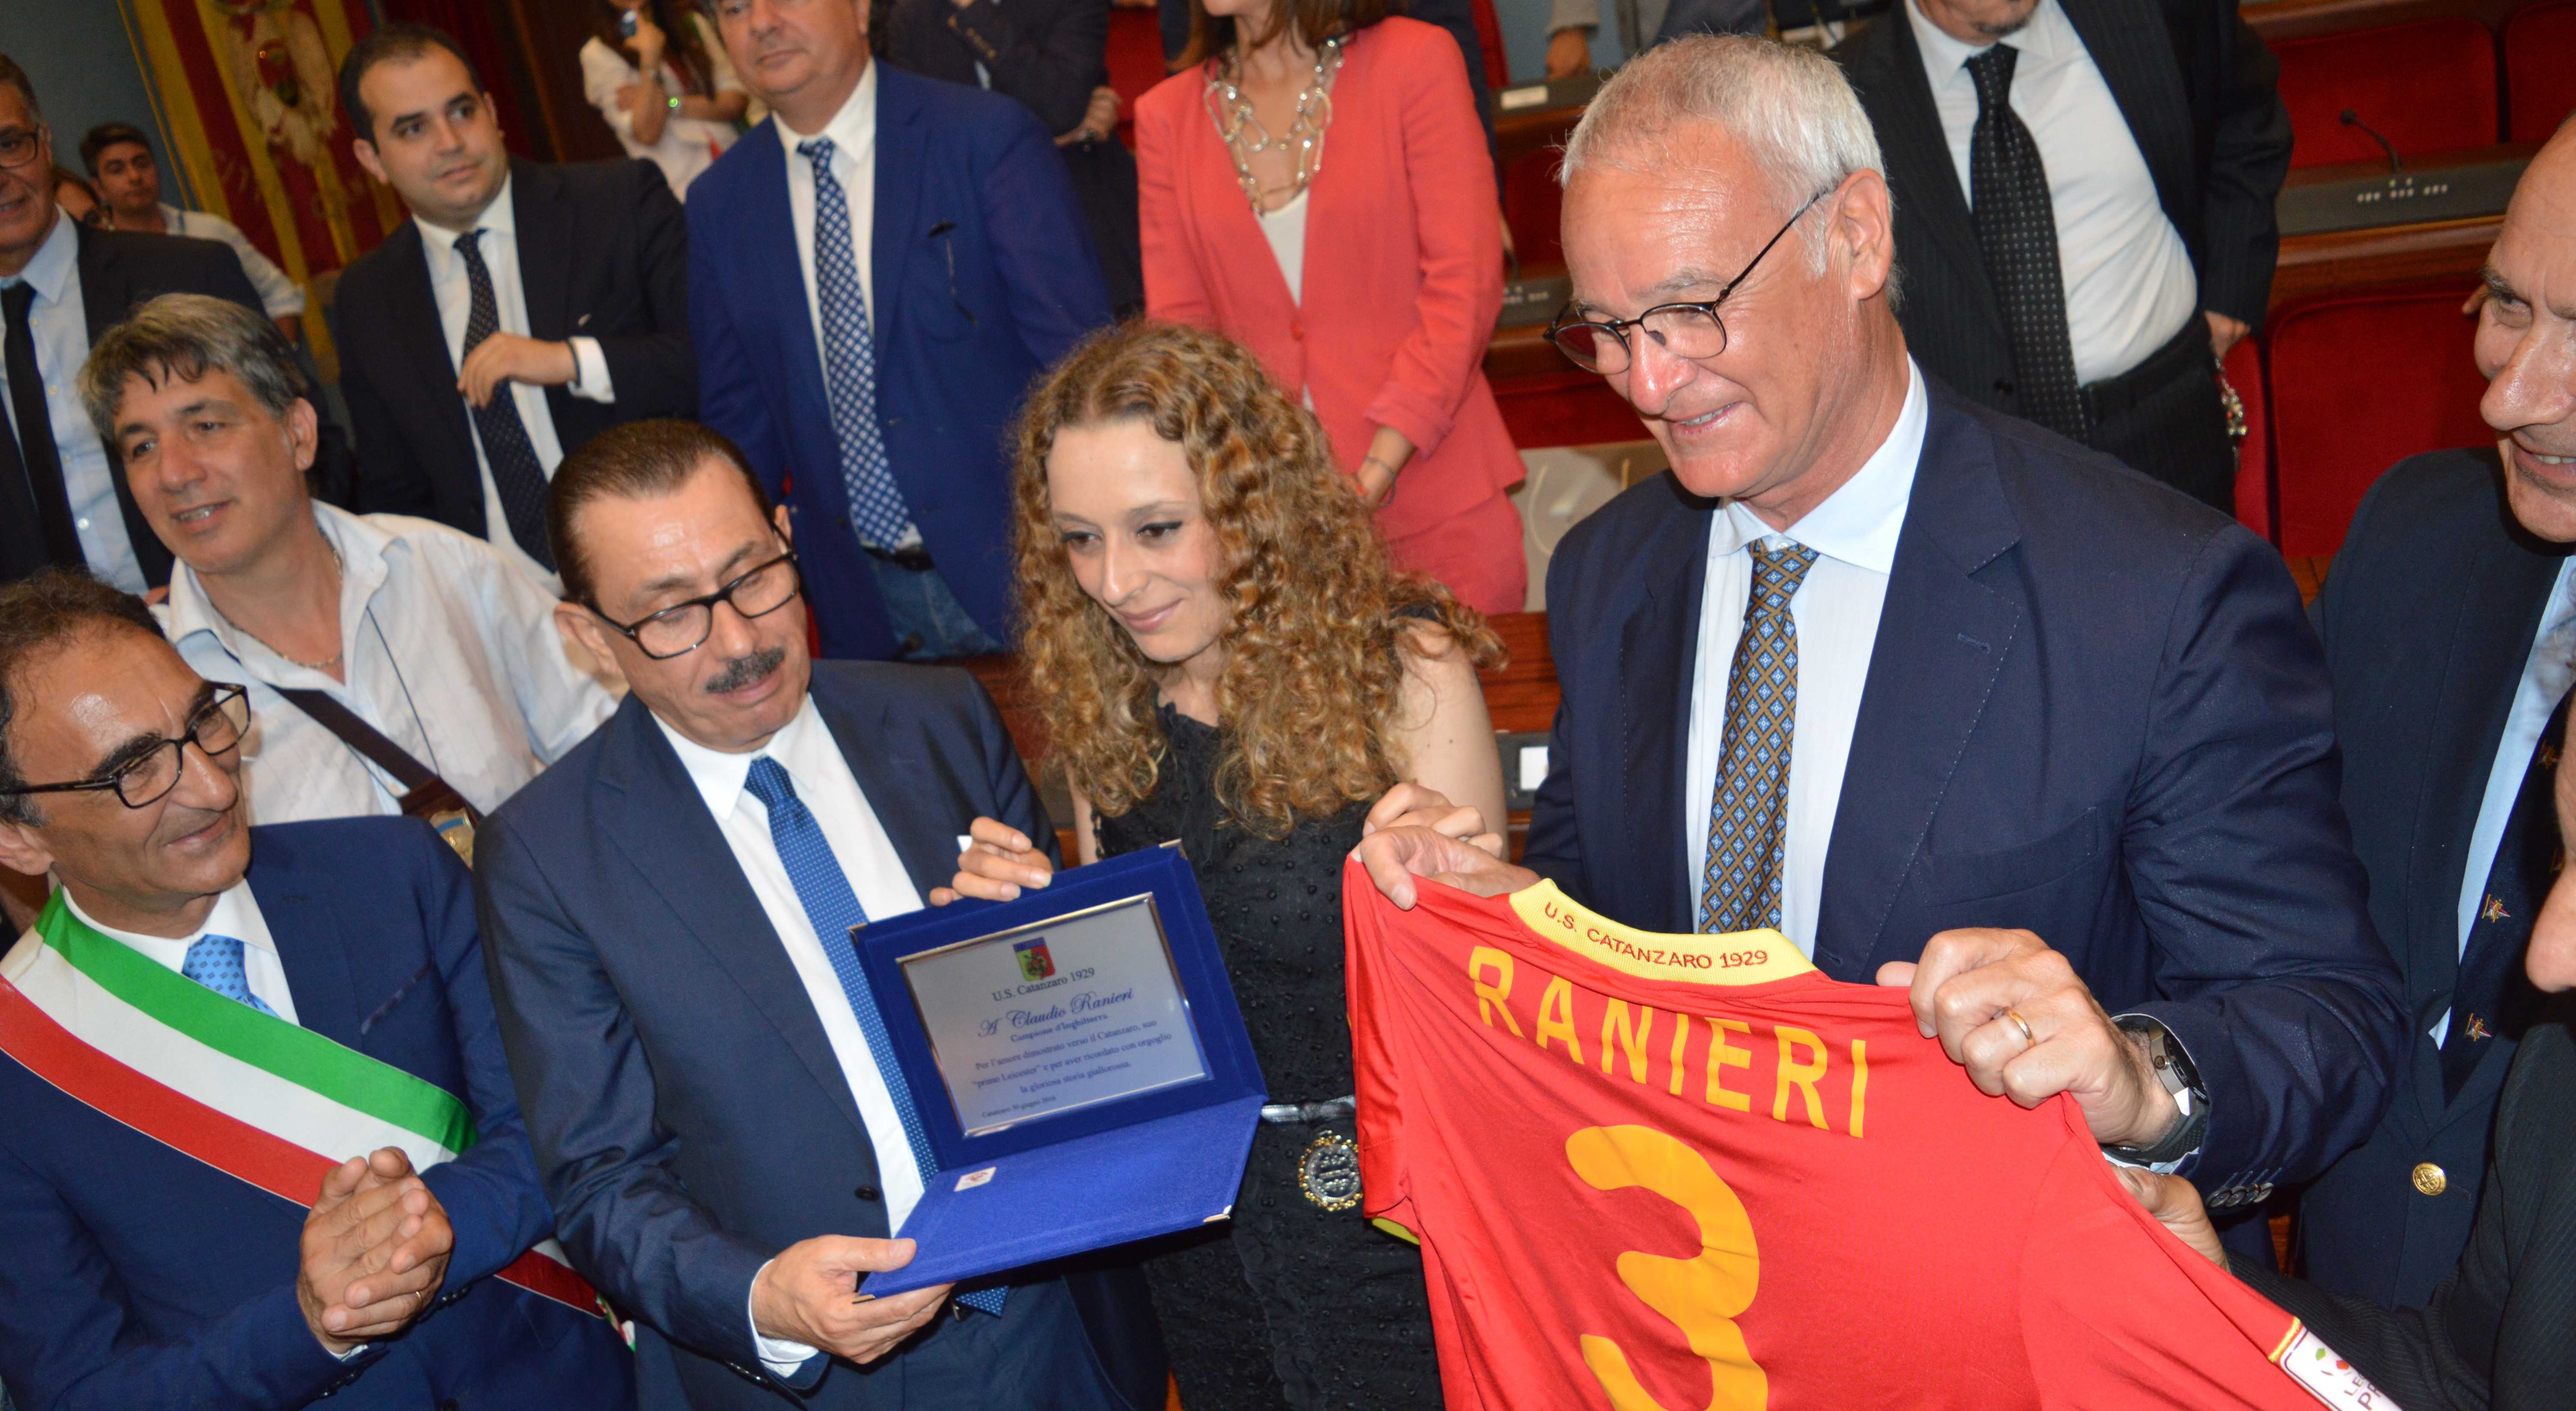 Ranieri e' cittadino onorario di Catanzaro. La cerimonia a Palazzo De Nobili [Foto e Video]